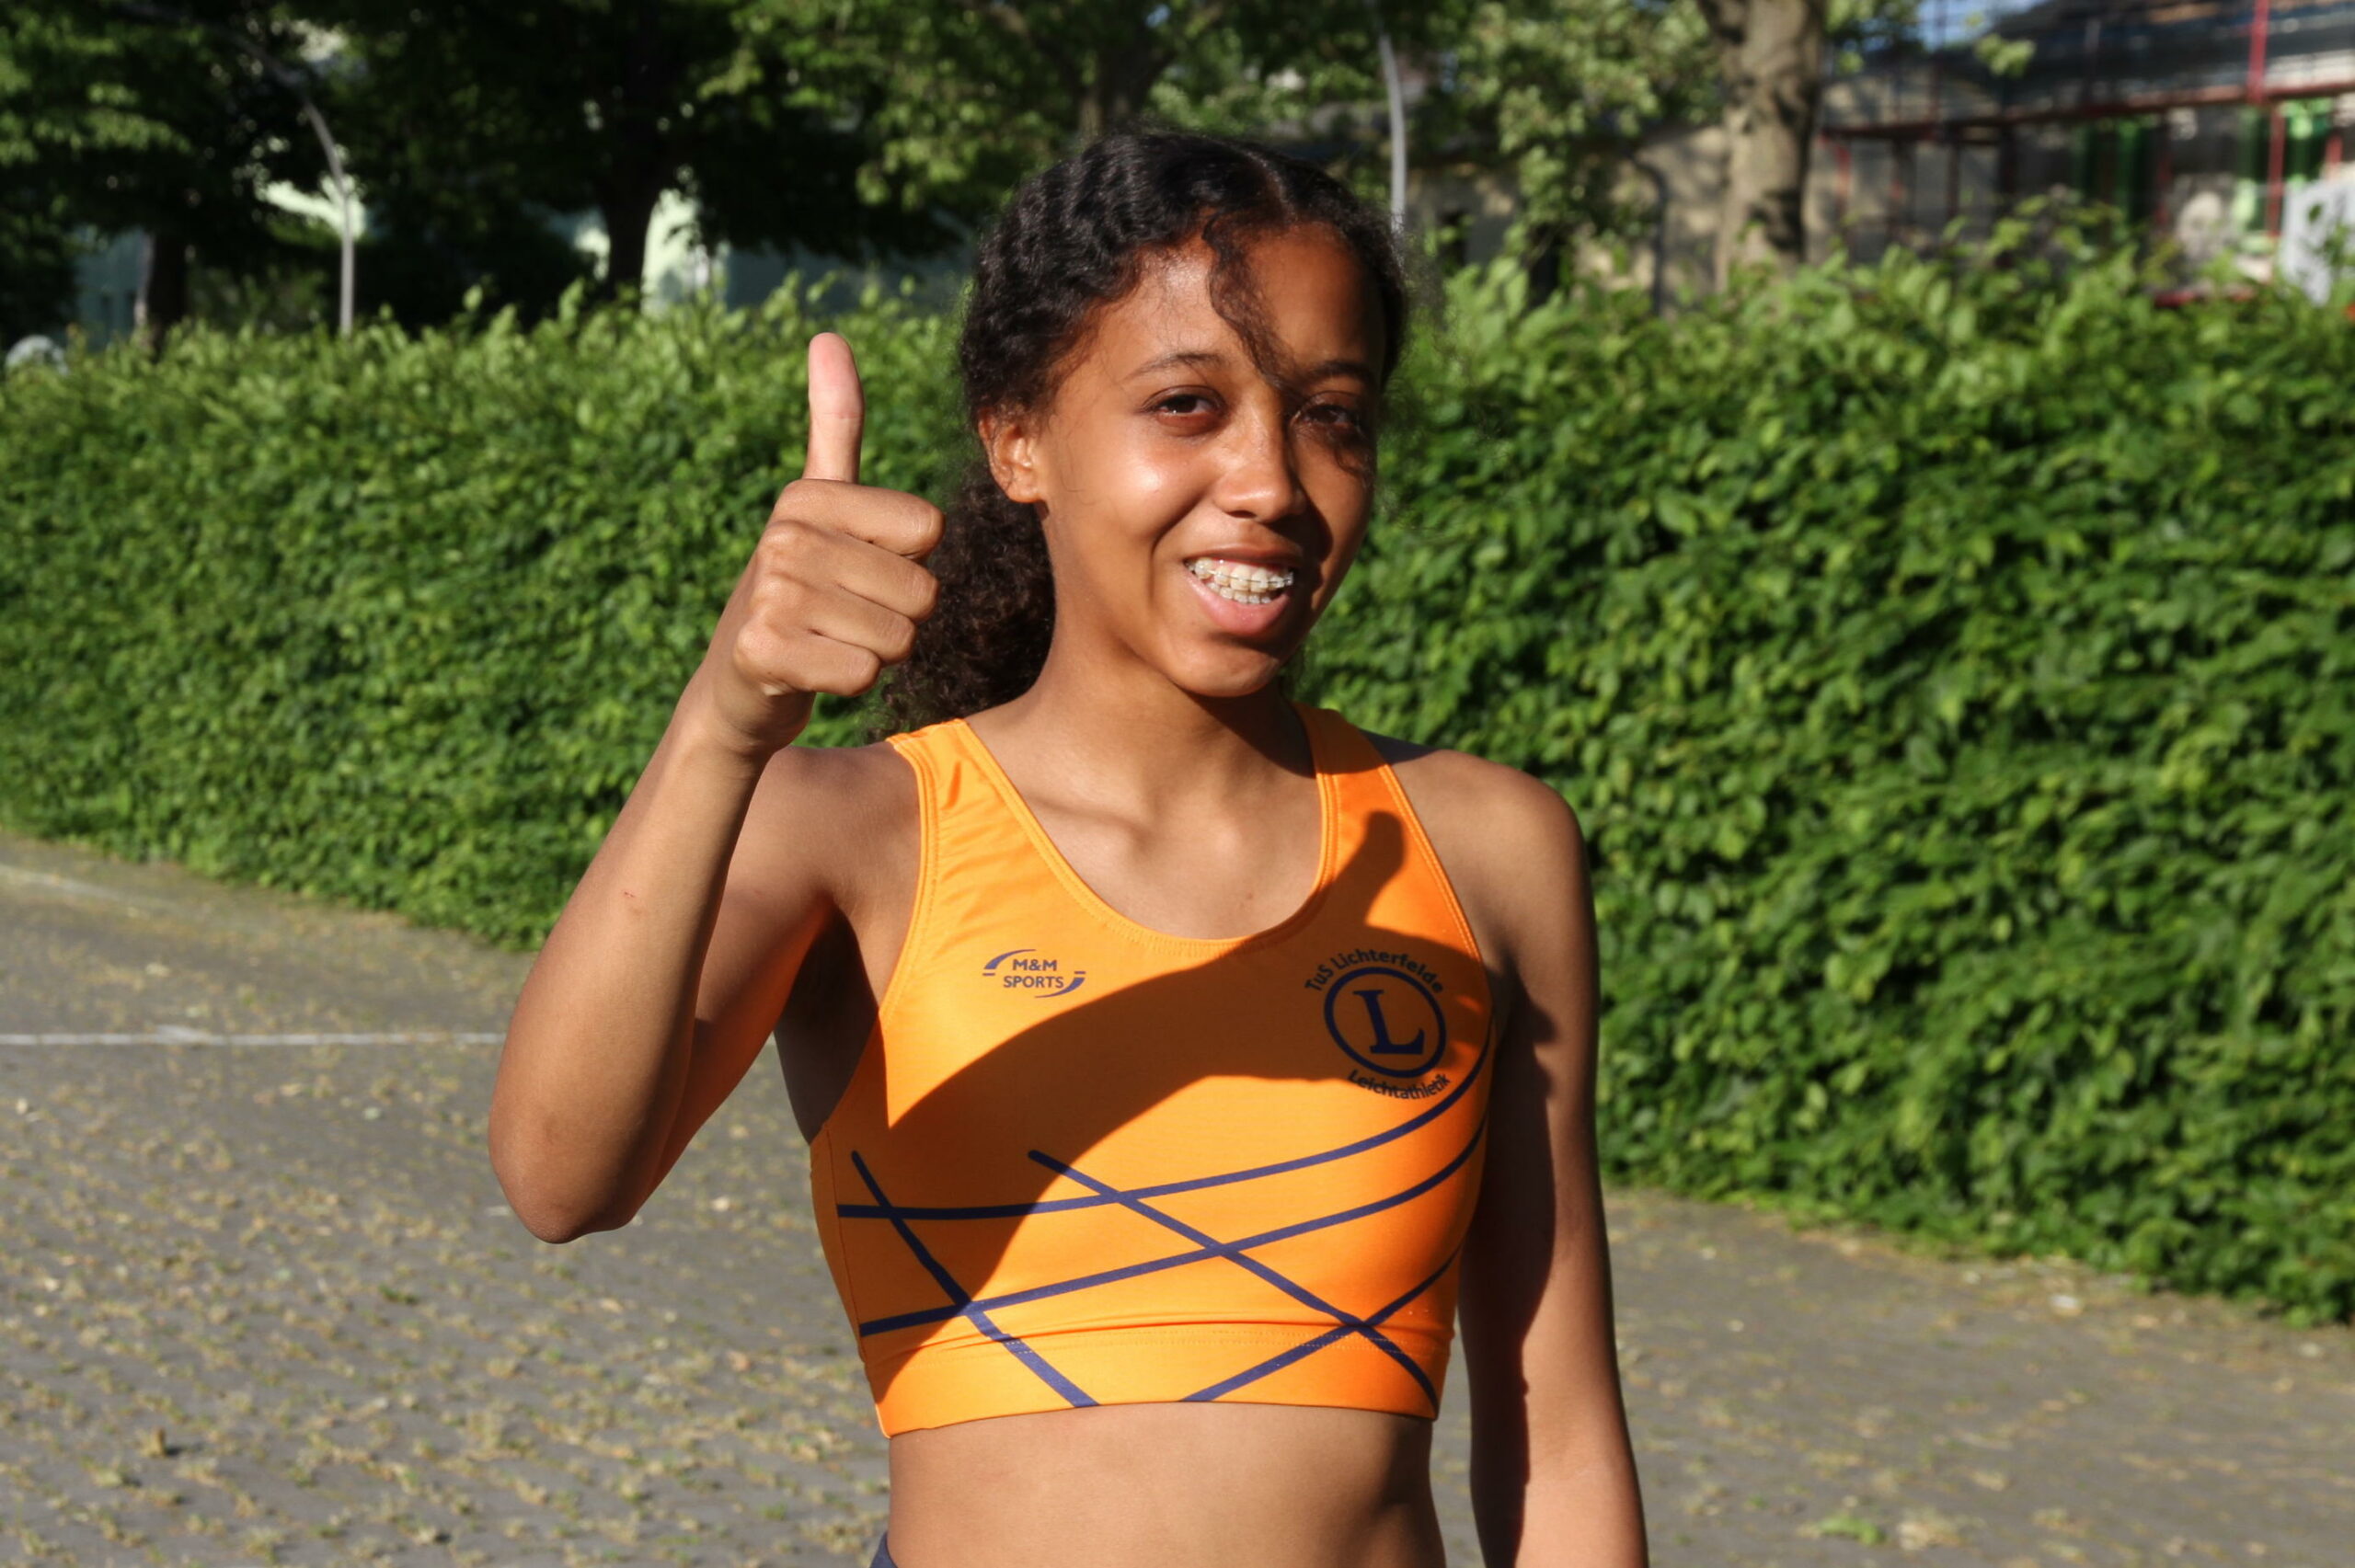 Helena Allegra Bendig (W13) verbesserte den Berliner Rekord im 75 m Lauf von Lisa Marie Kwayie aus dem Jahre 2009 um 26 Hundertstel